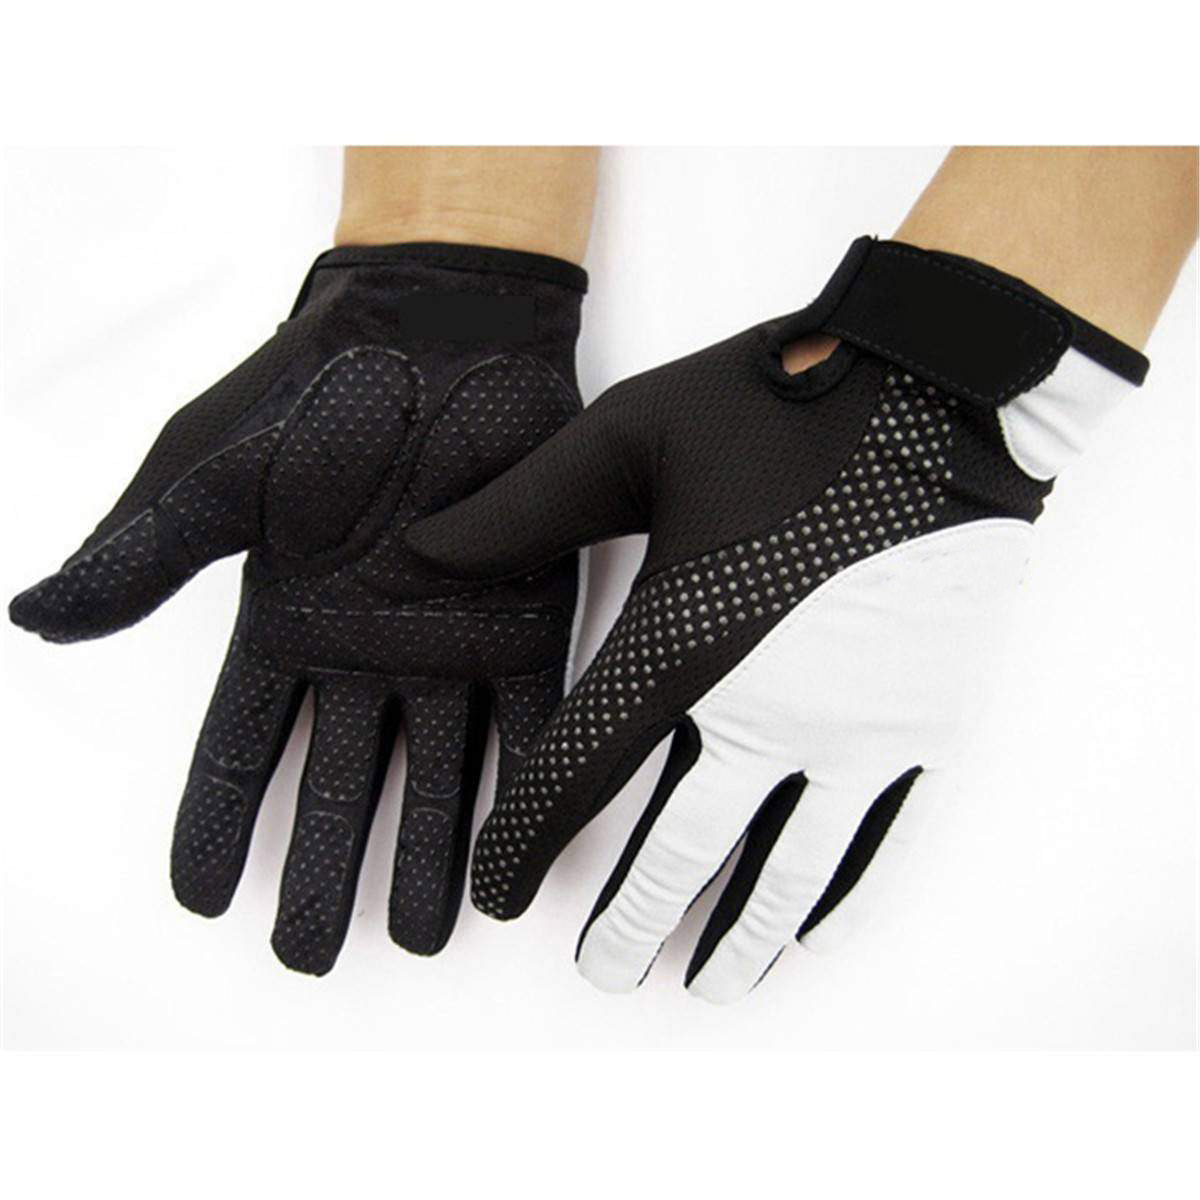 Gripping Gloves